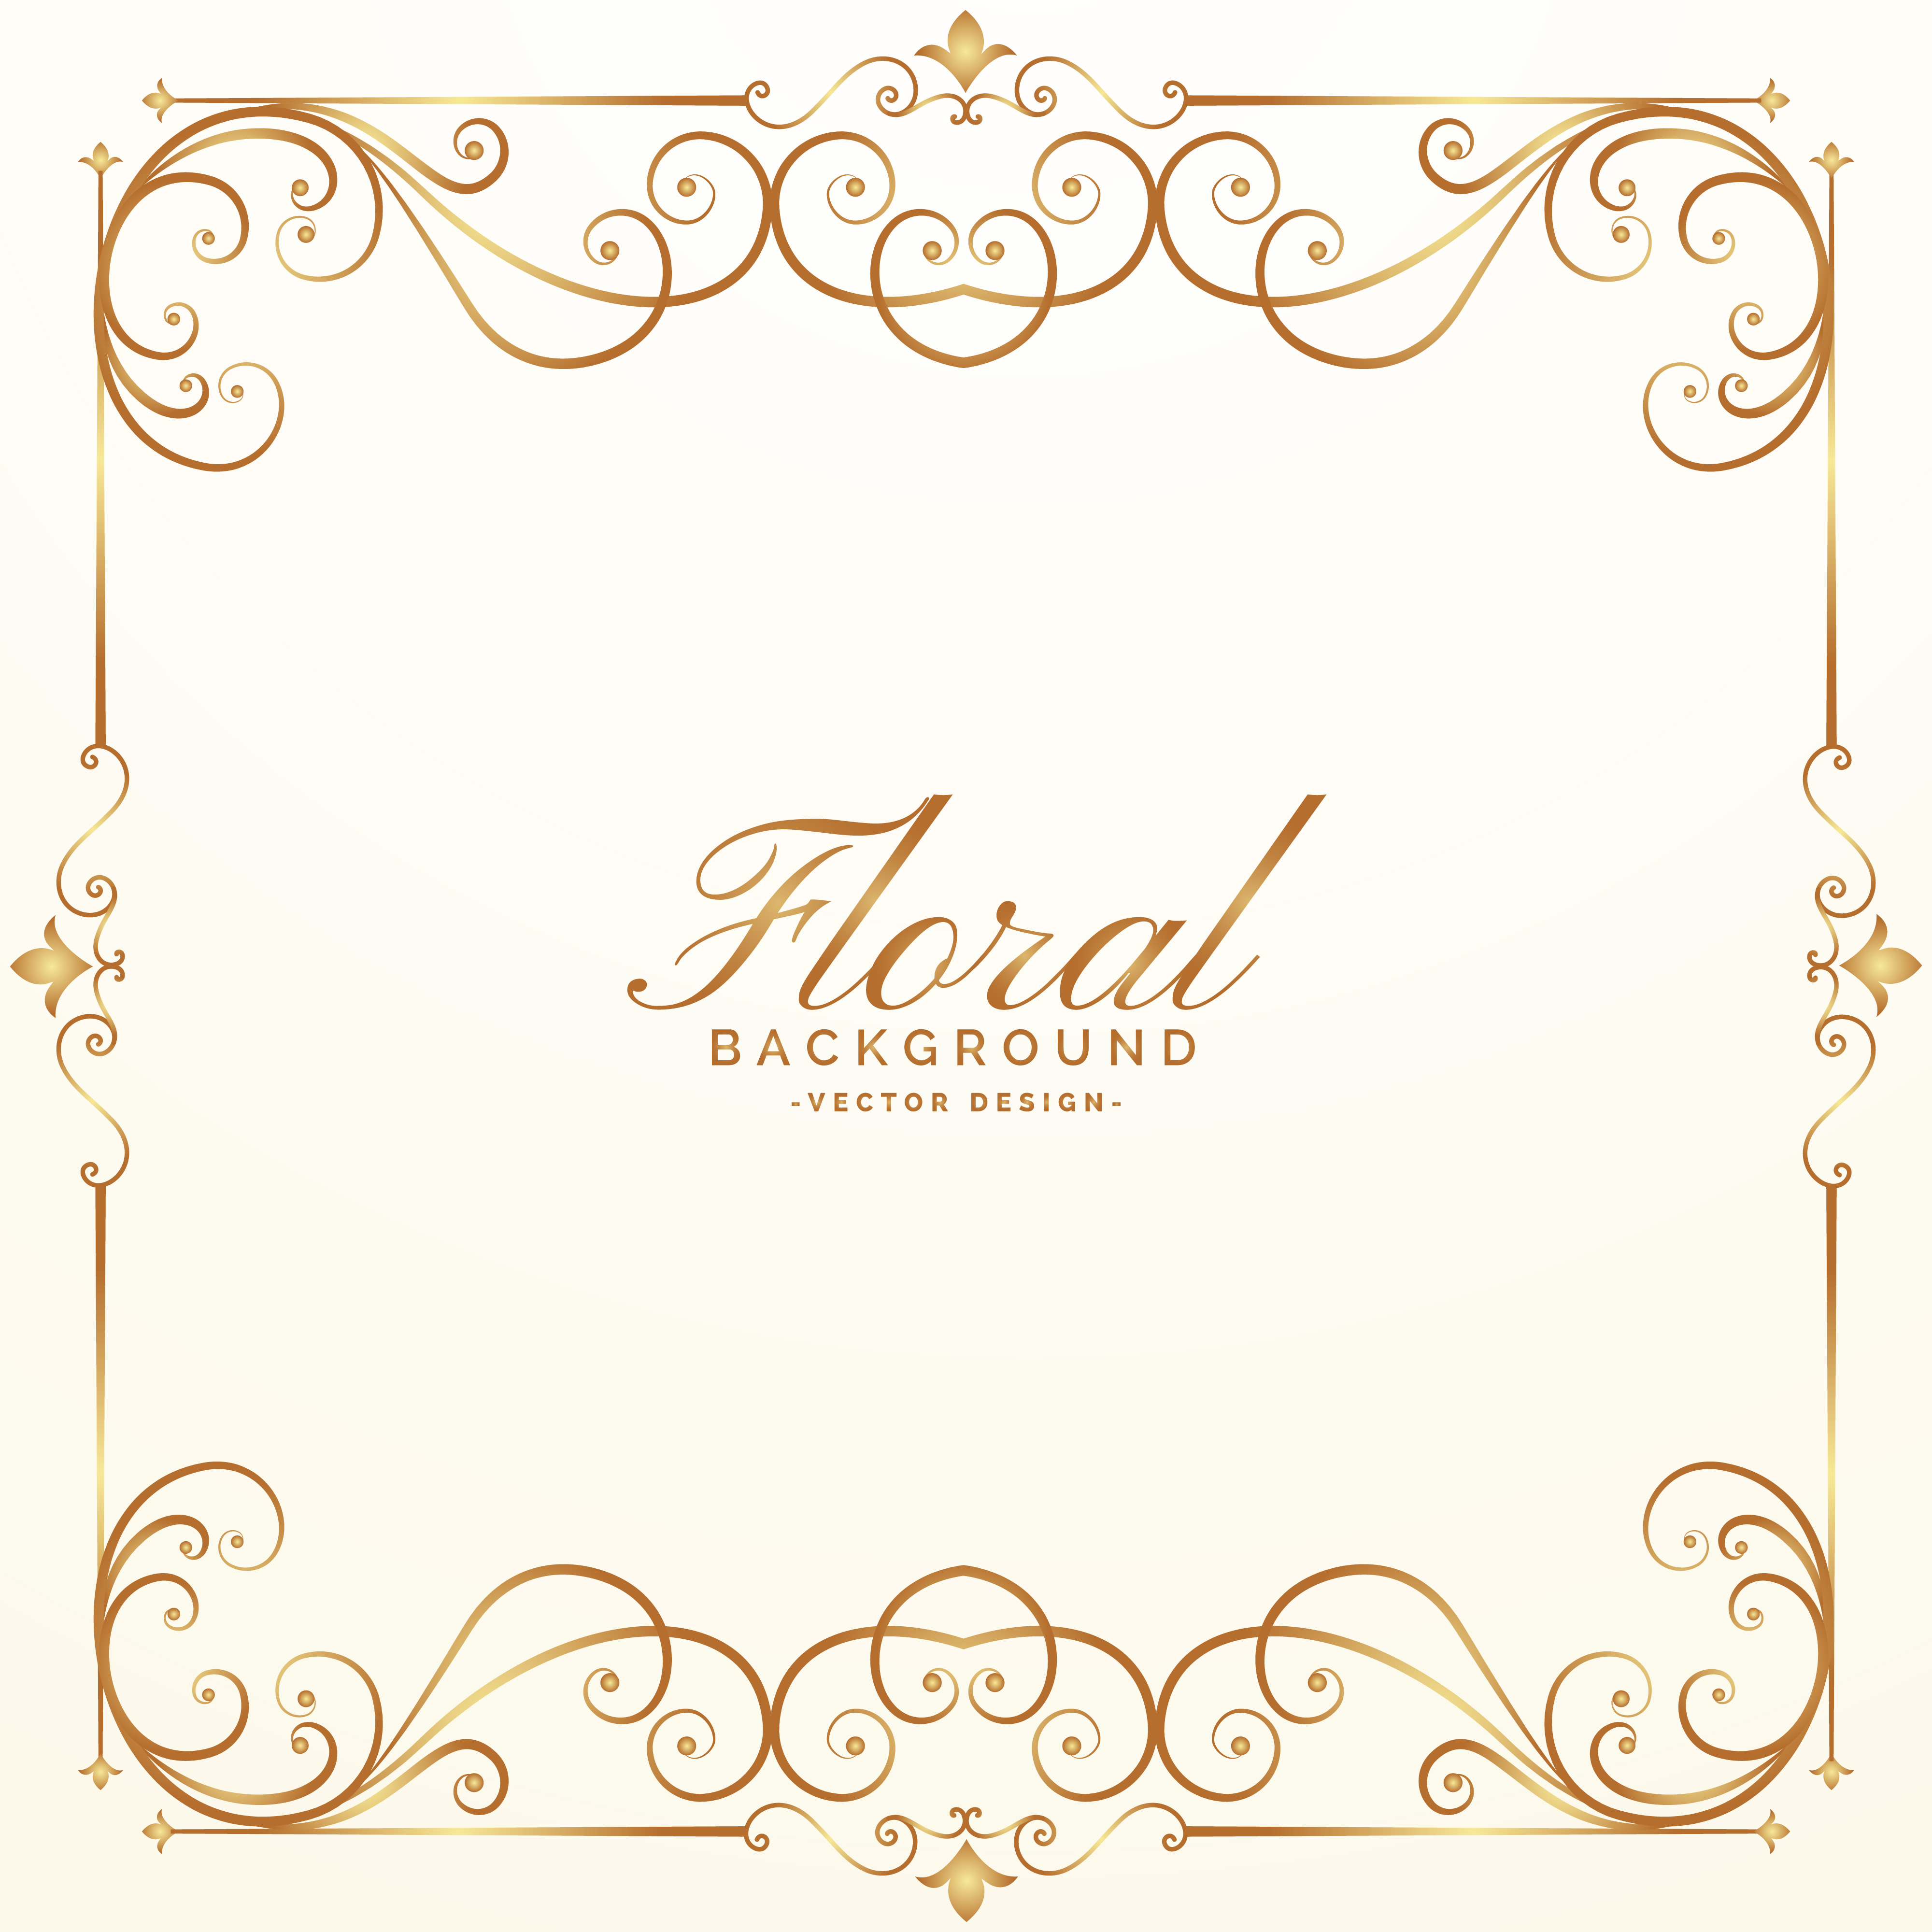 Elegant Floral Background Design Vector Download Free Vector Art